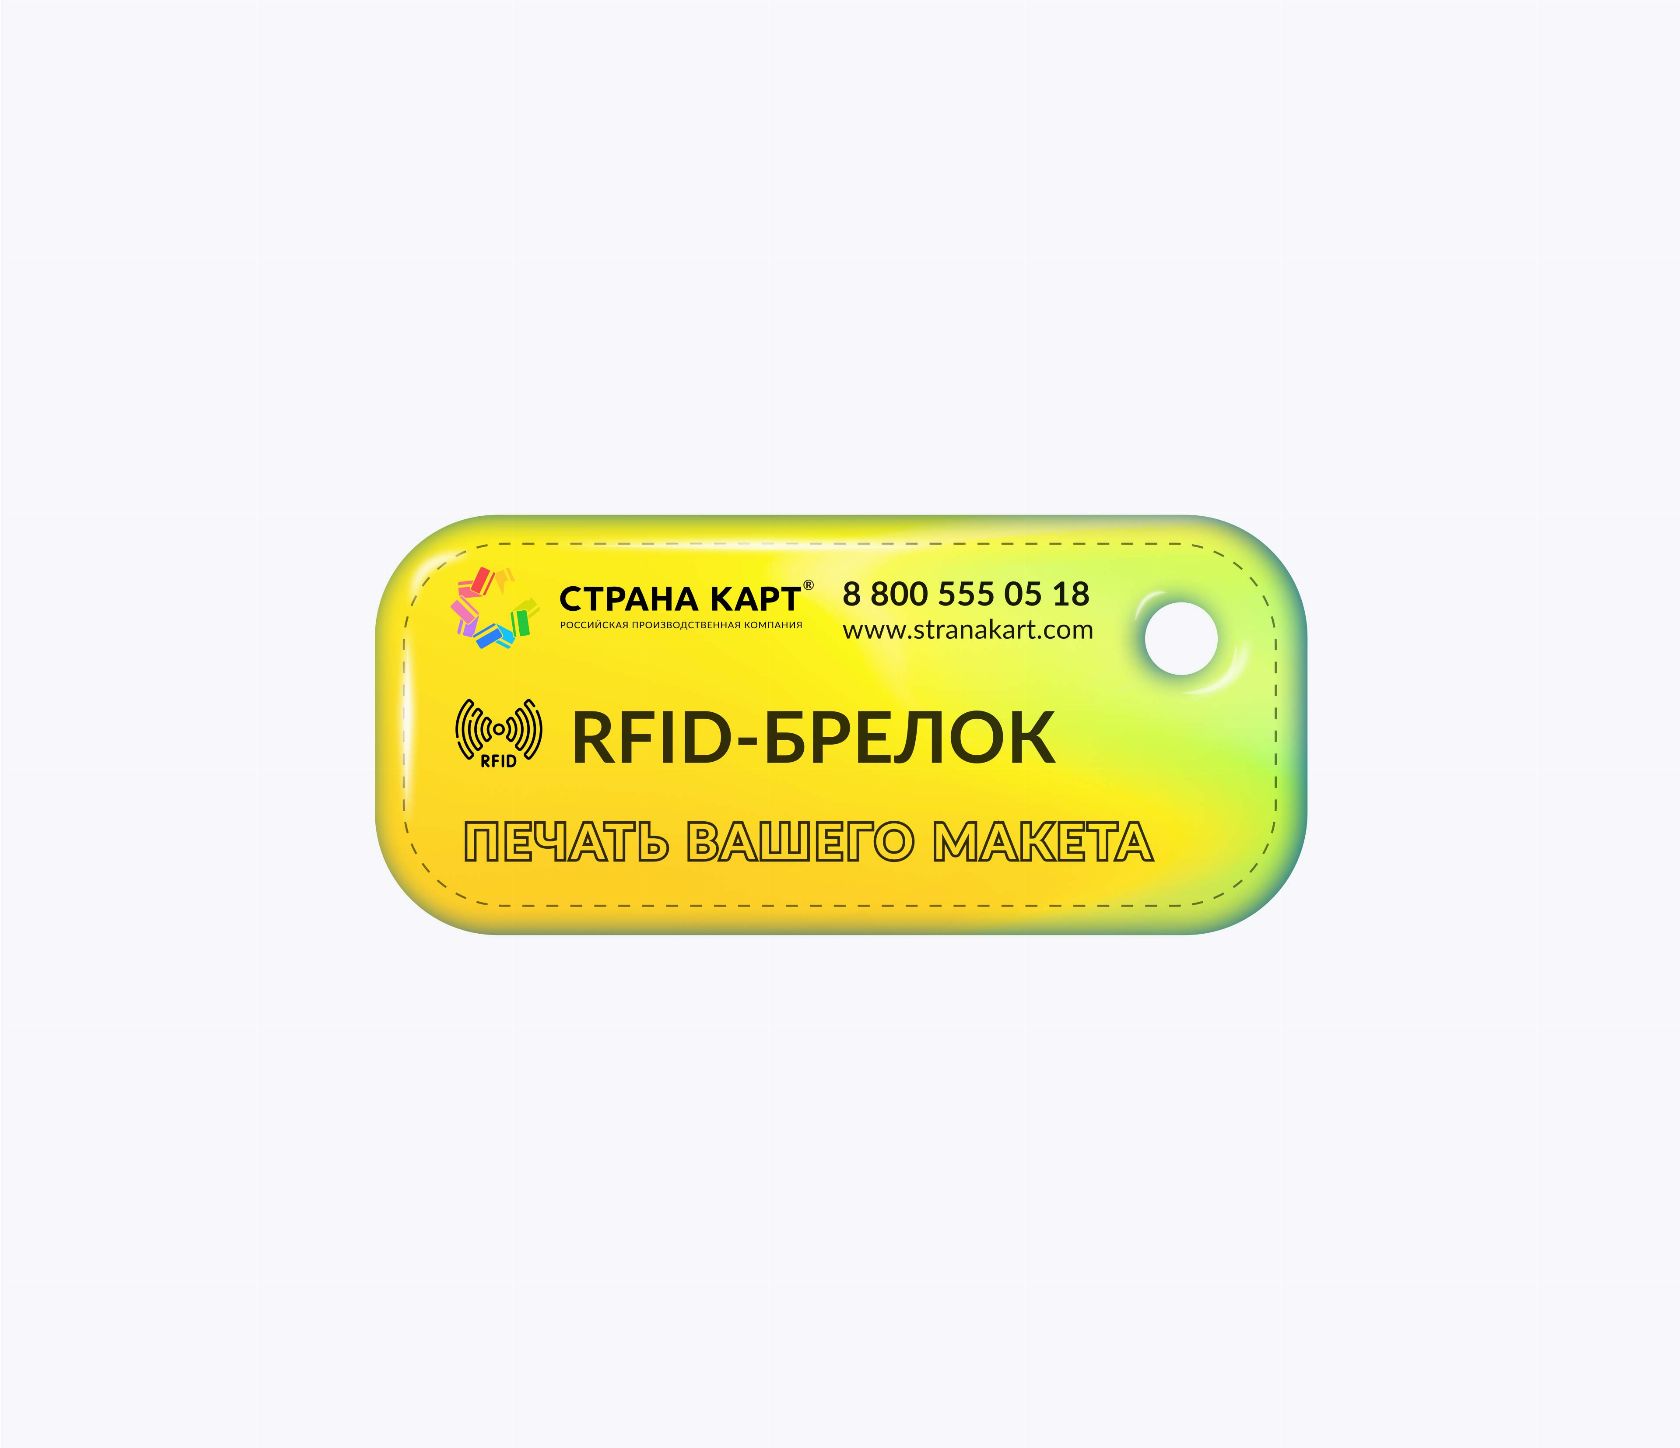 Мини прямоугольные RFID-брелоки NEOKEY® с чипом и вашим дизайном Мини прямоугольные RFID-брелоки NEOKEY® с чипом и вашим дизайном